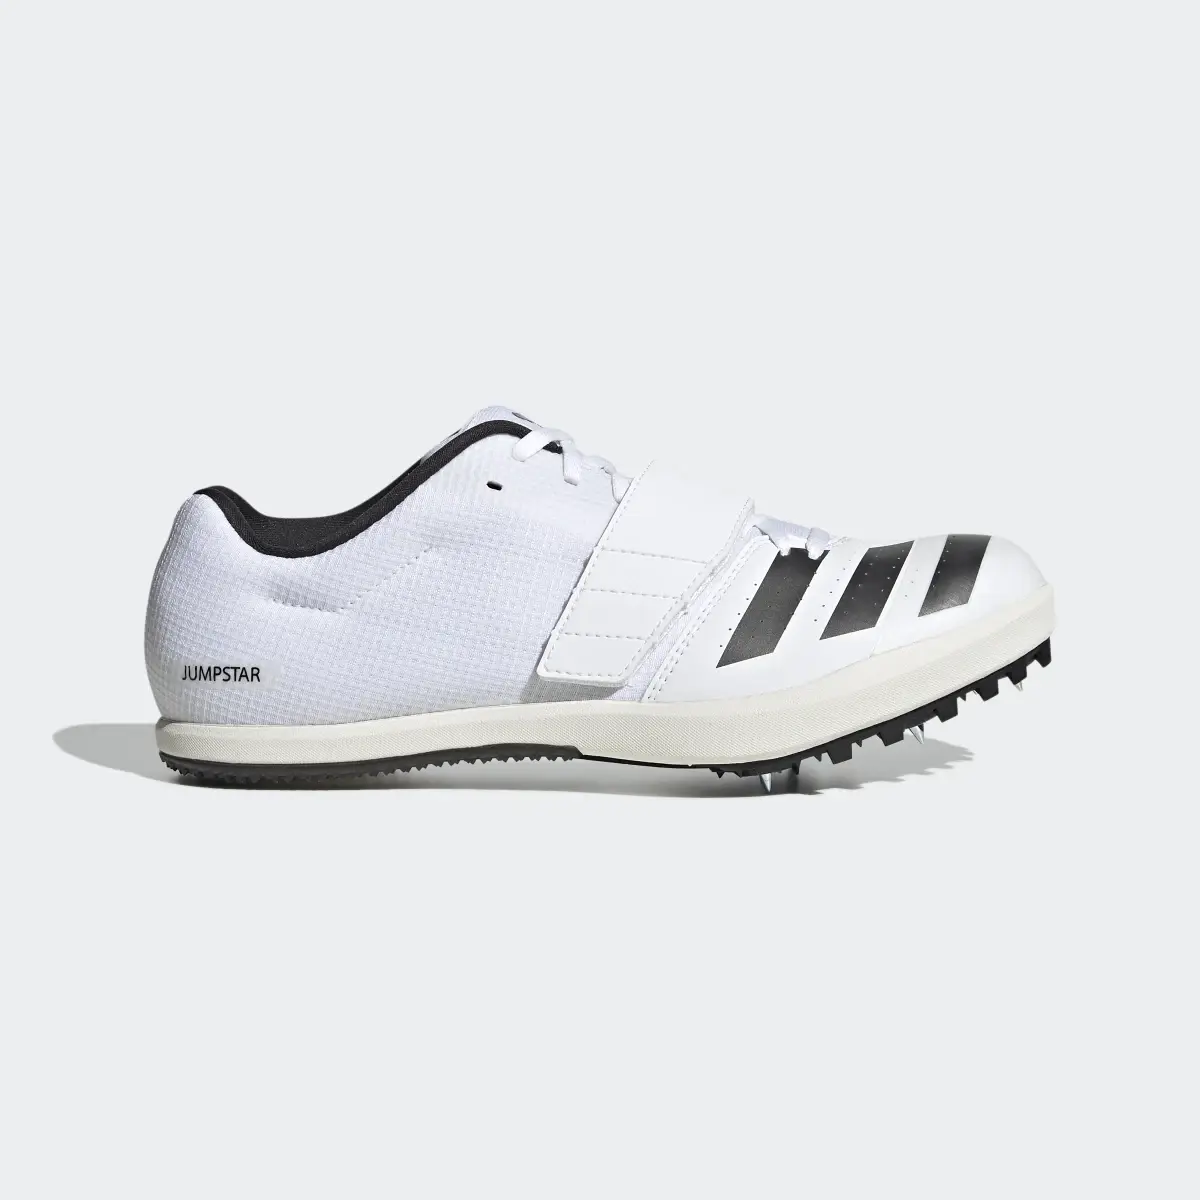 Adidas Jumpstar Shoes. 2